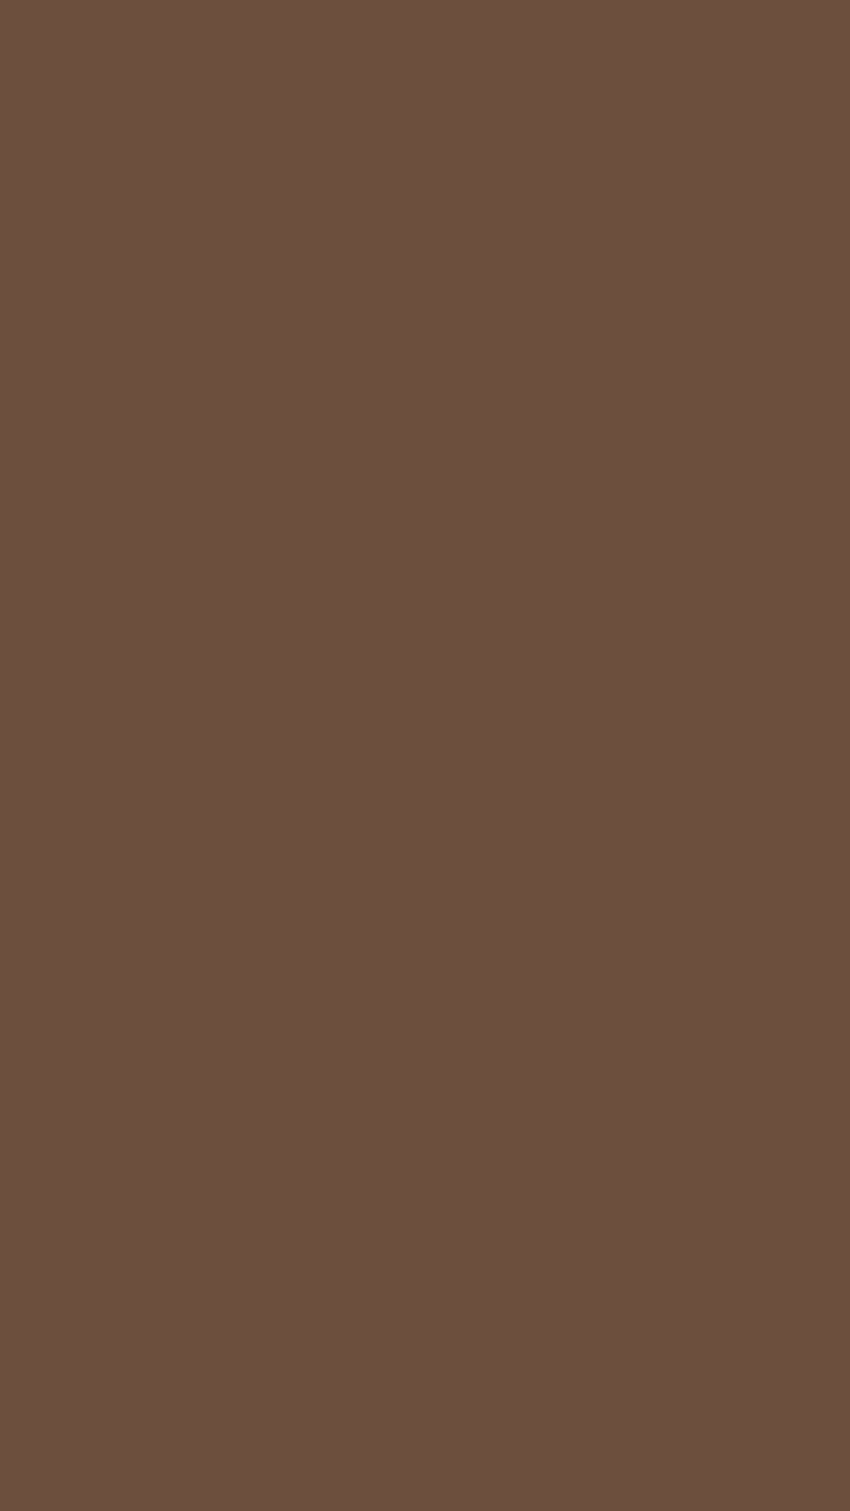 Brown Plain, colour brown HD phone wallpaper